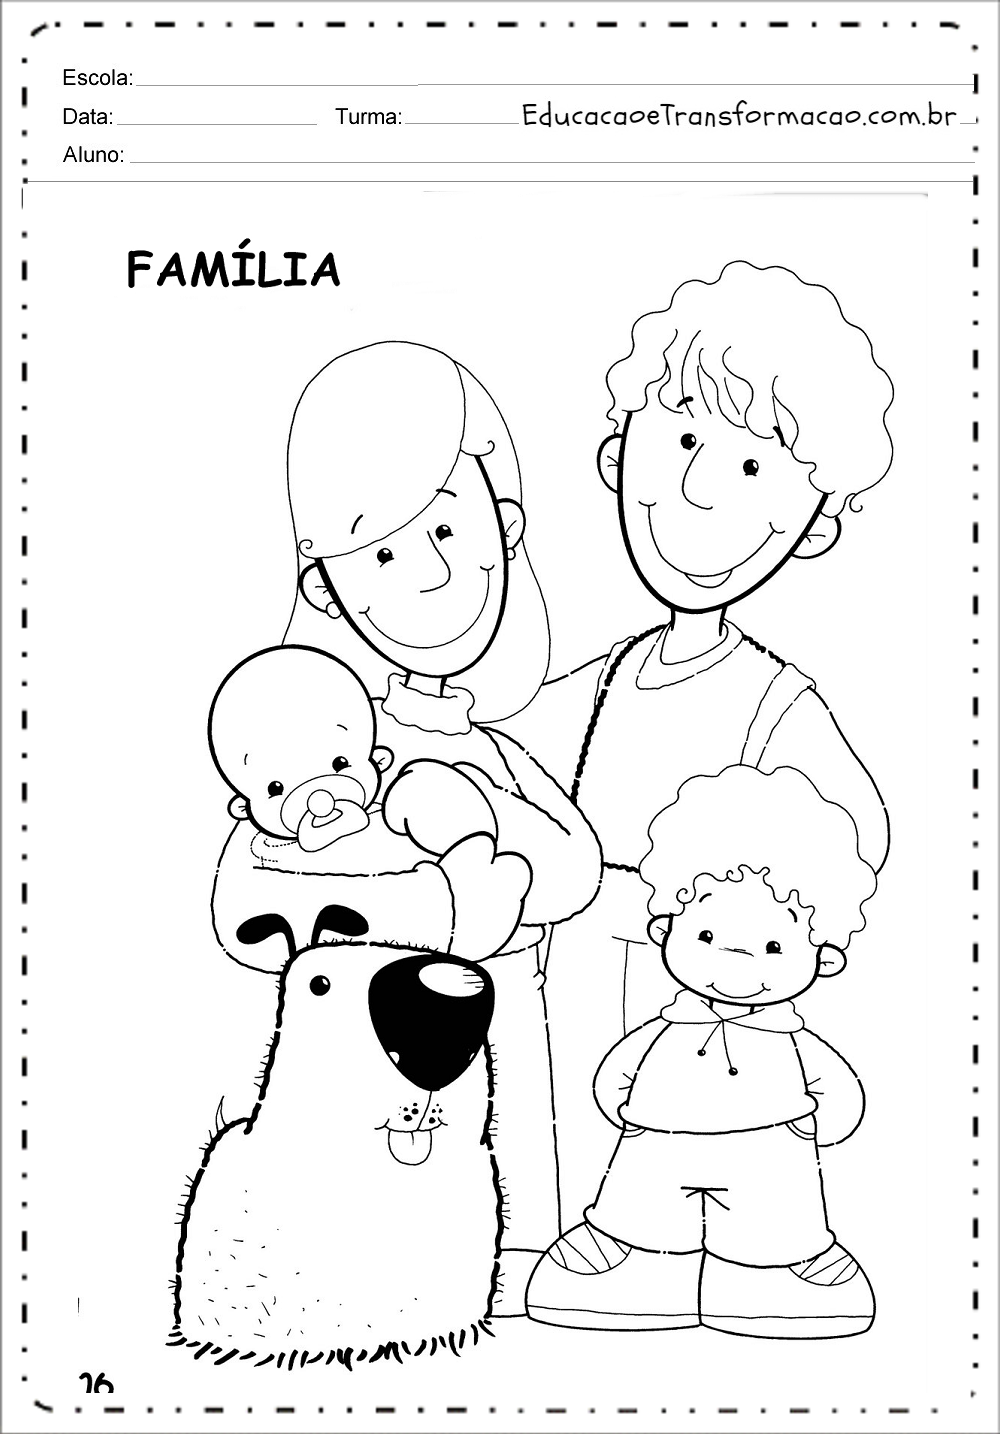 Atividades sobre Família para imprimir - Educação Infantil e Fundamental.